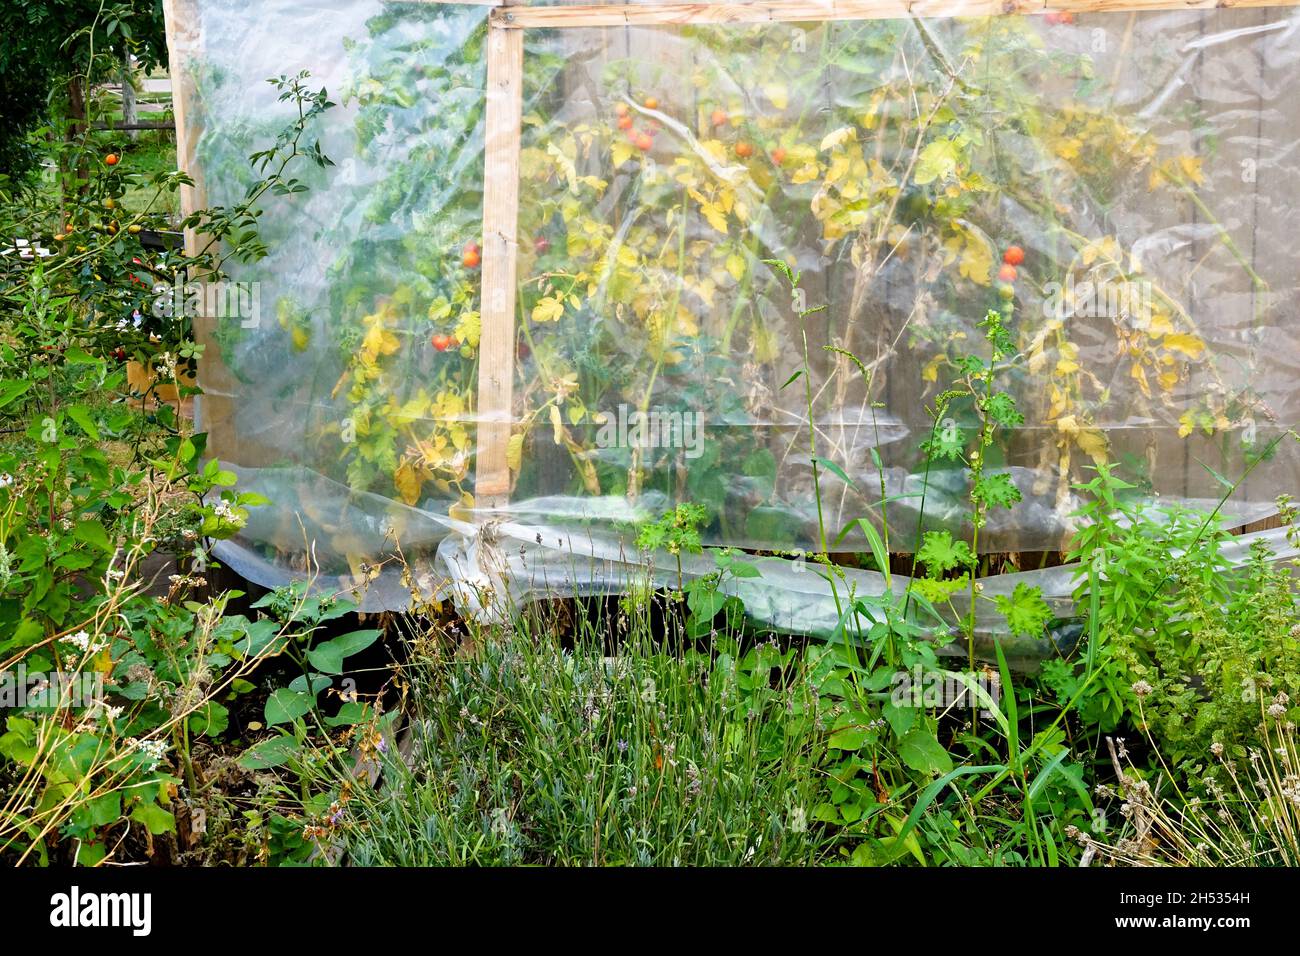 Plants de tomates poussant dans une serre en plastique, jardin d'allotement jaunissant des plantes Banque D'Images